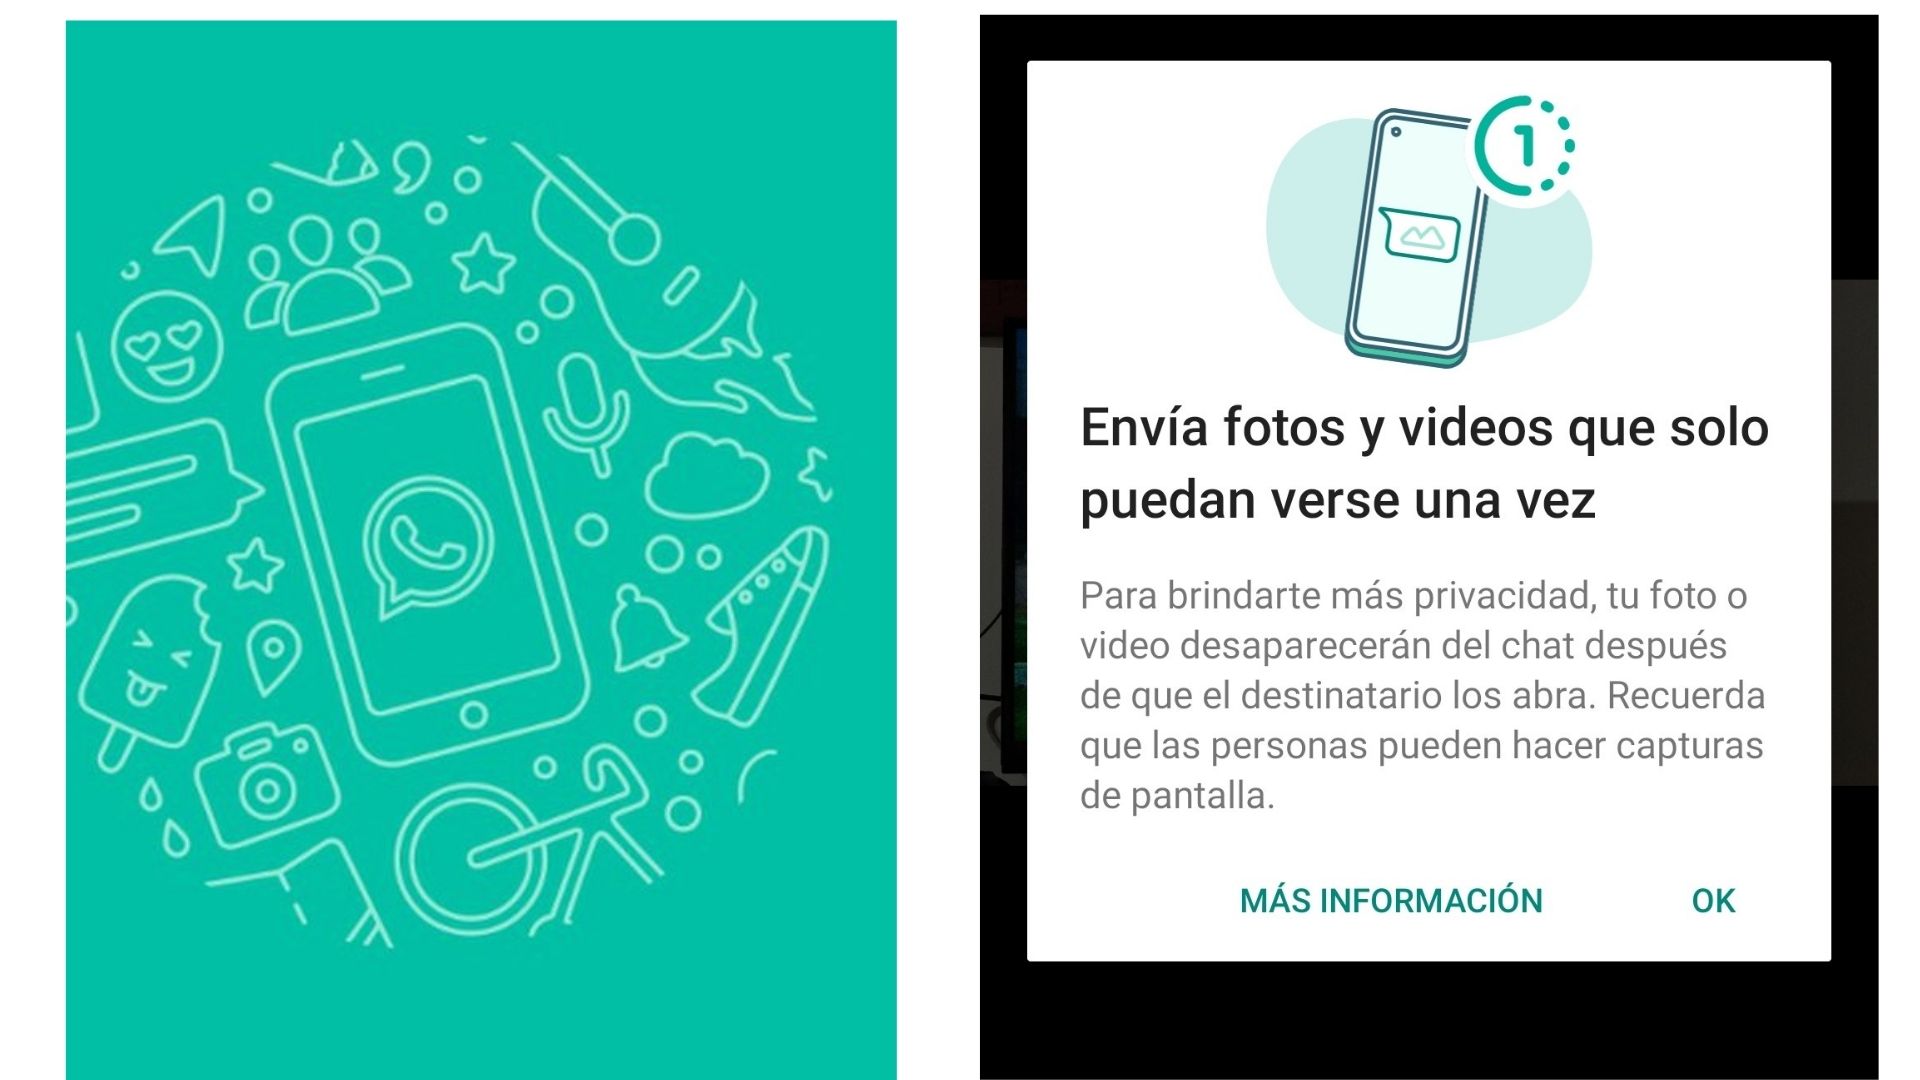 WhatsApp añadió una función para fotos y videos que solo se pueden ver una vez y desaparecen